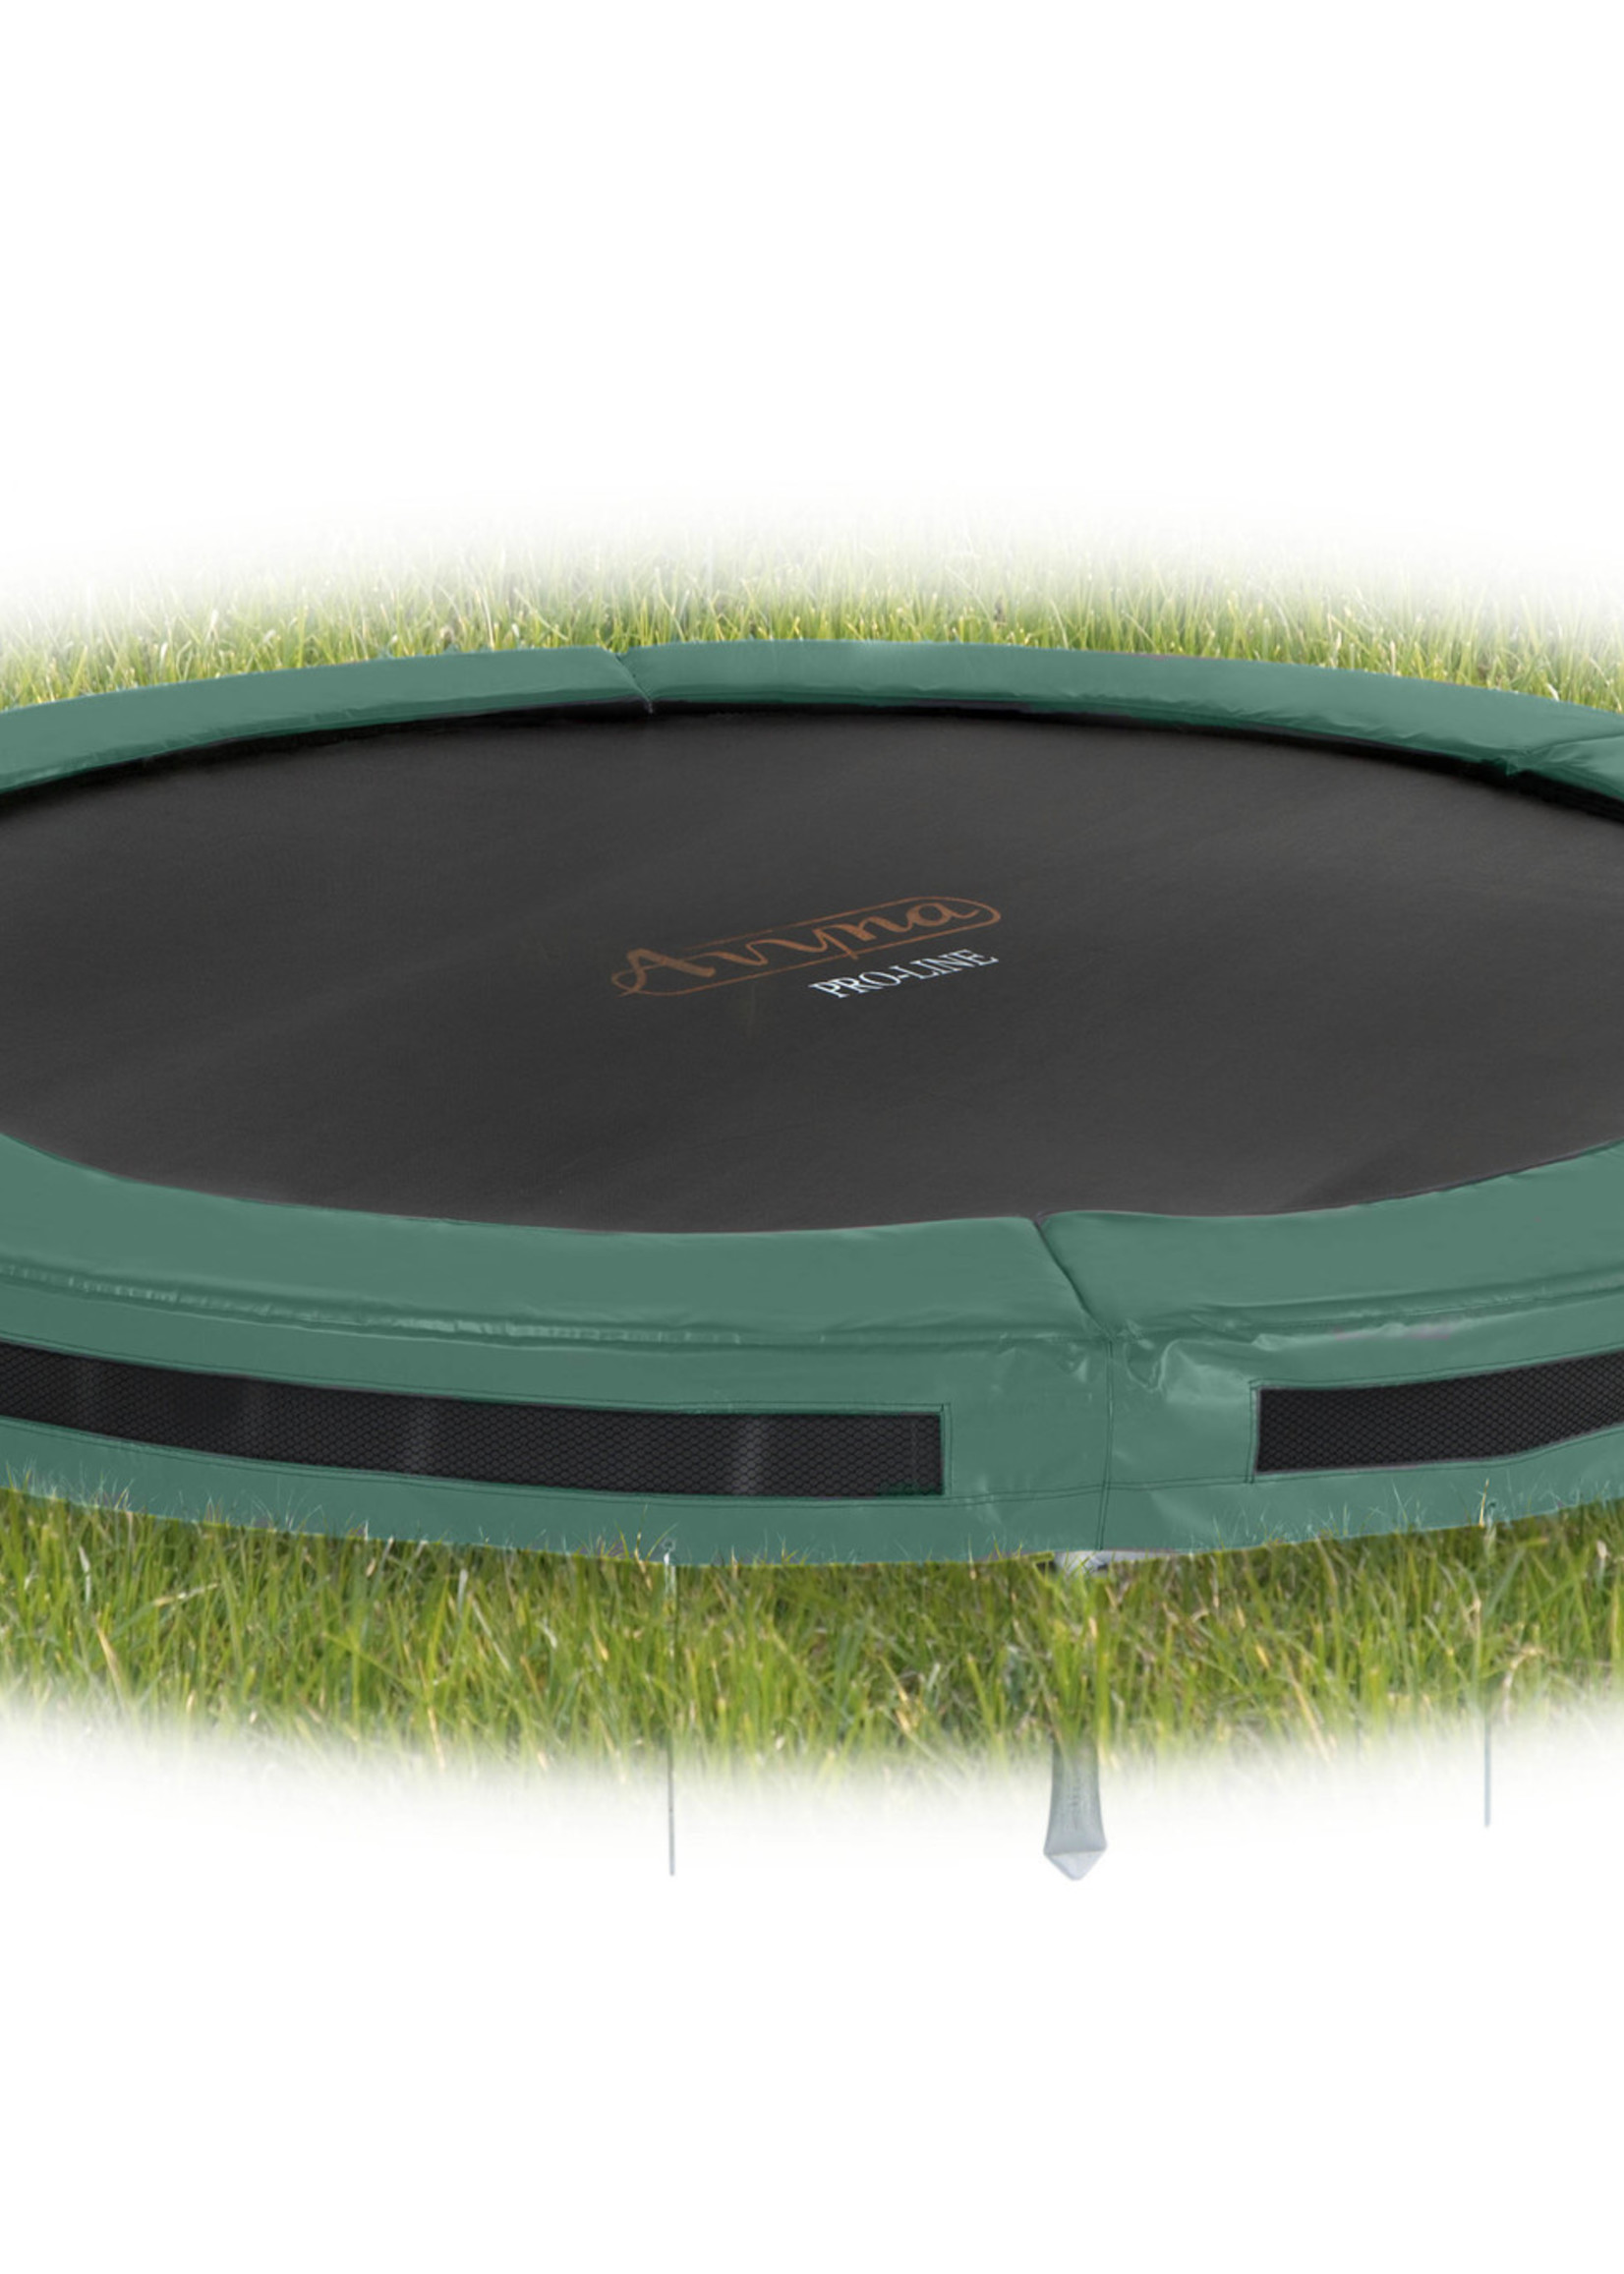 Avyna Ronde trampoline van Avyna voor in de grond, Inground  Ø 365 cm